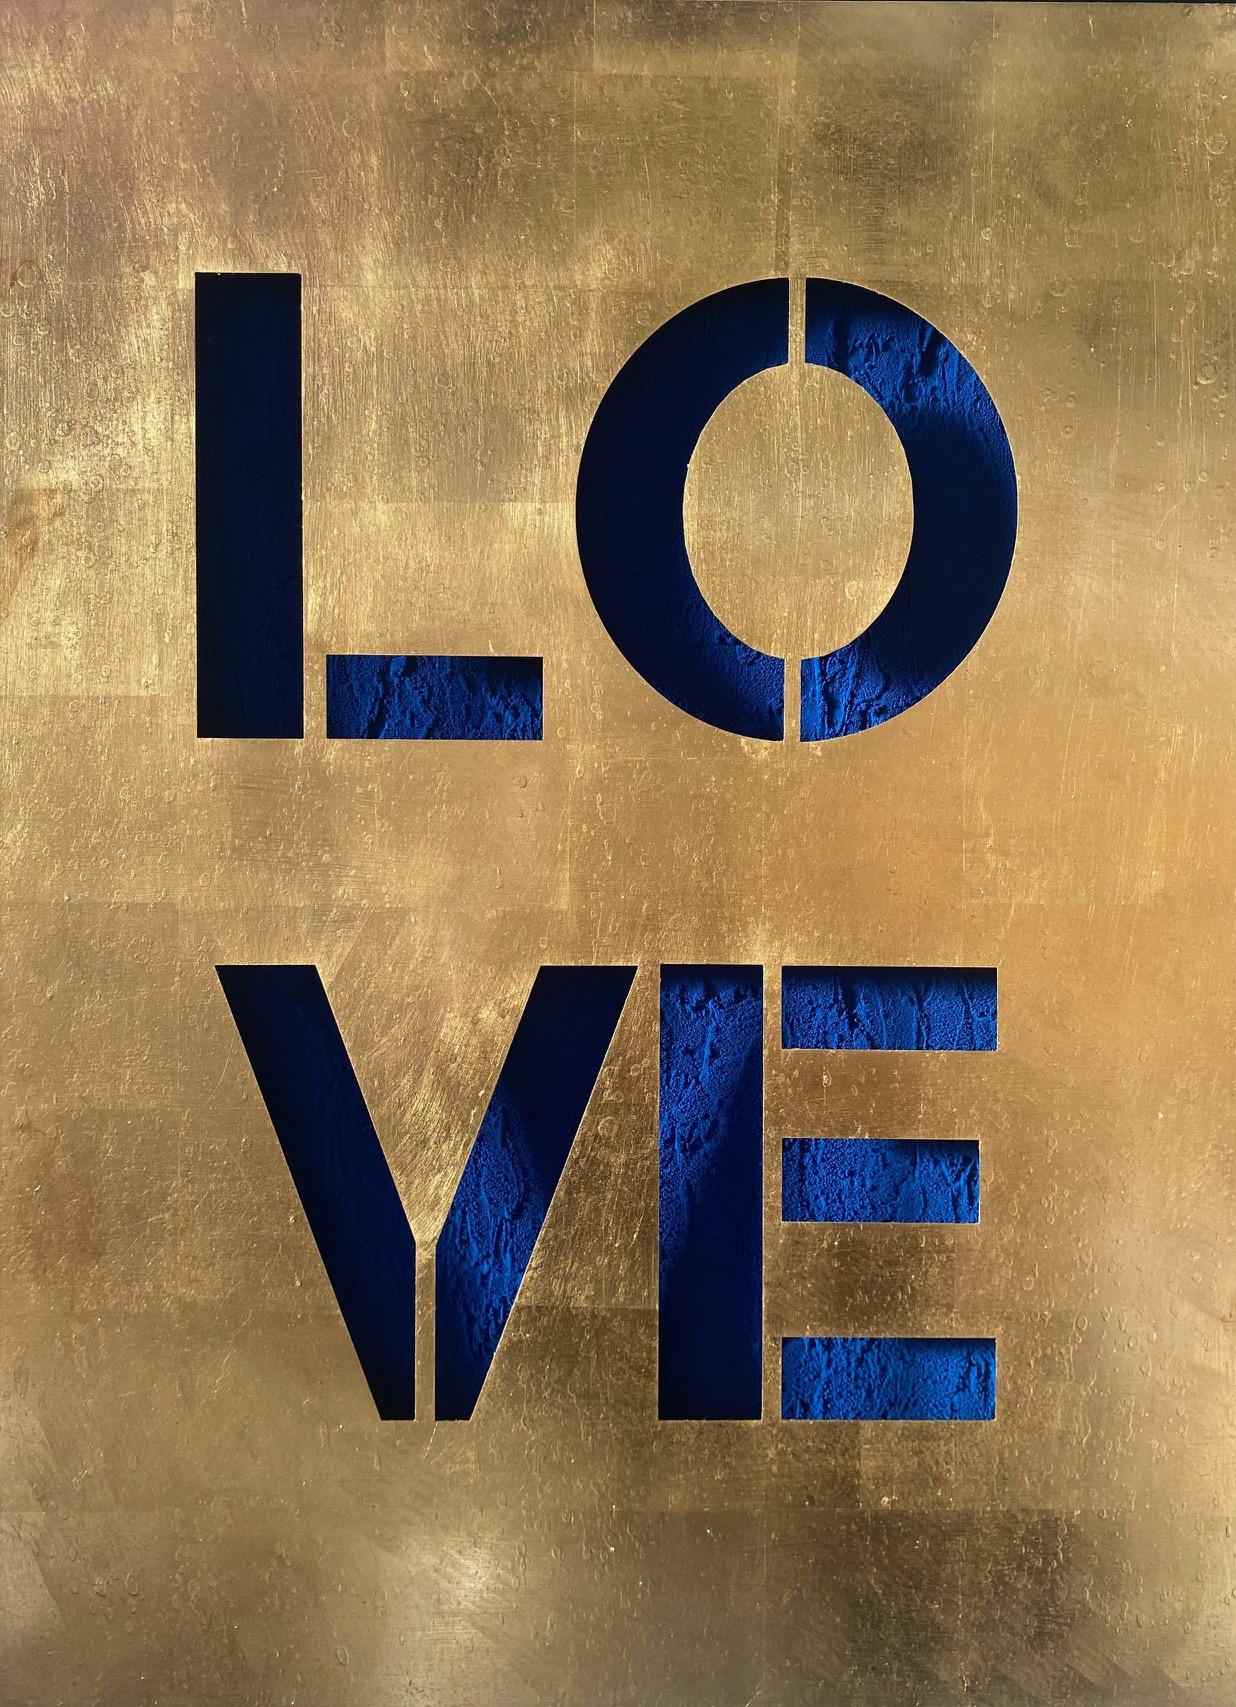 LOVE Royal Blue - zeitgenössische Original-Pop-Art in Gold und Blau, ausgeschnitten 